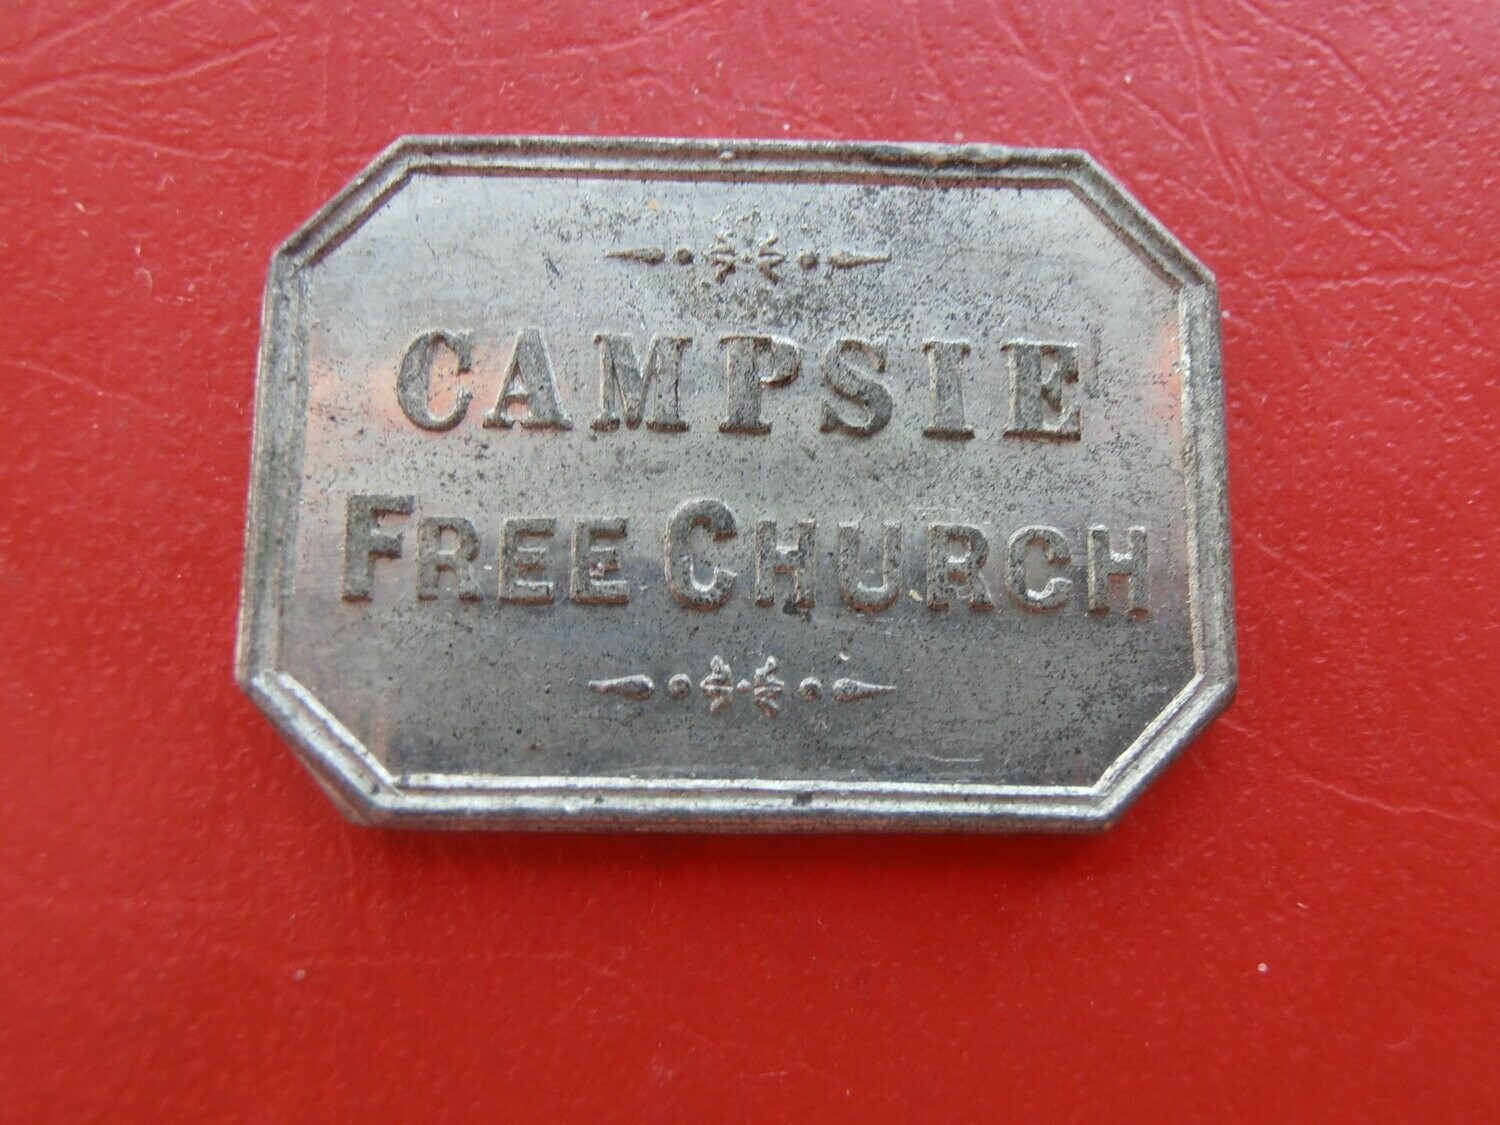 Communion Token Campsie - Mid 1800s